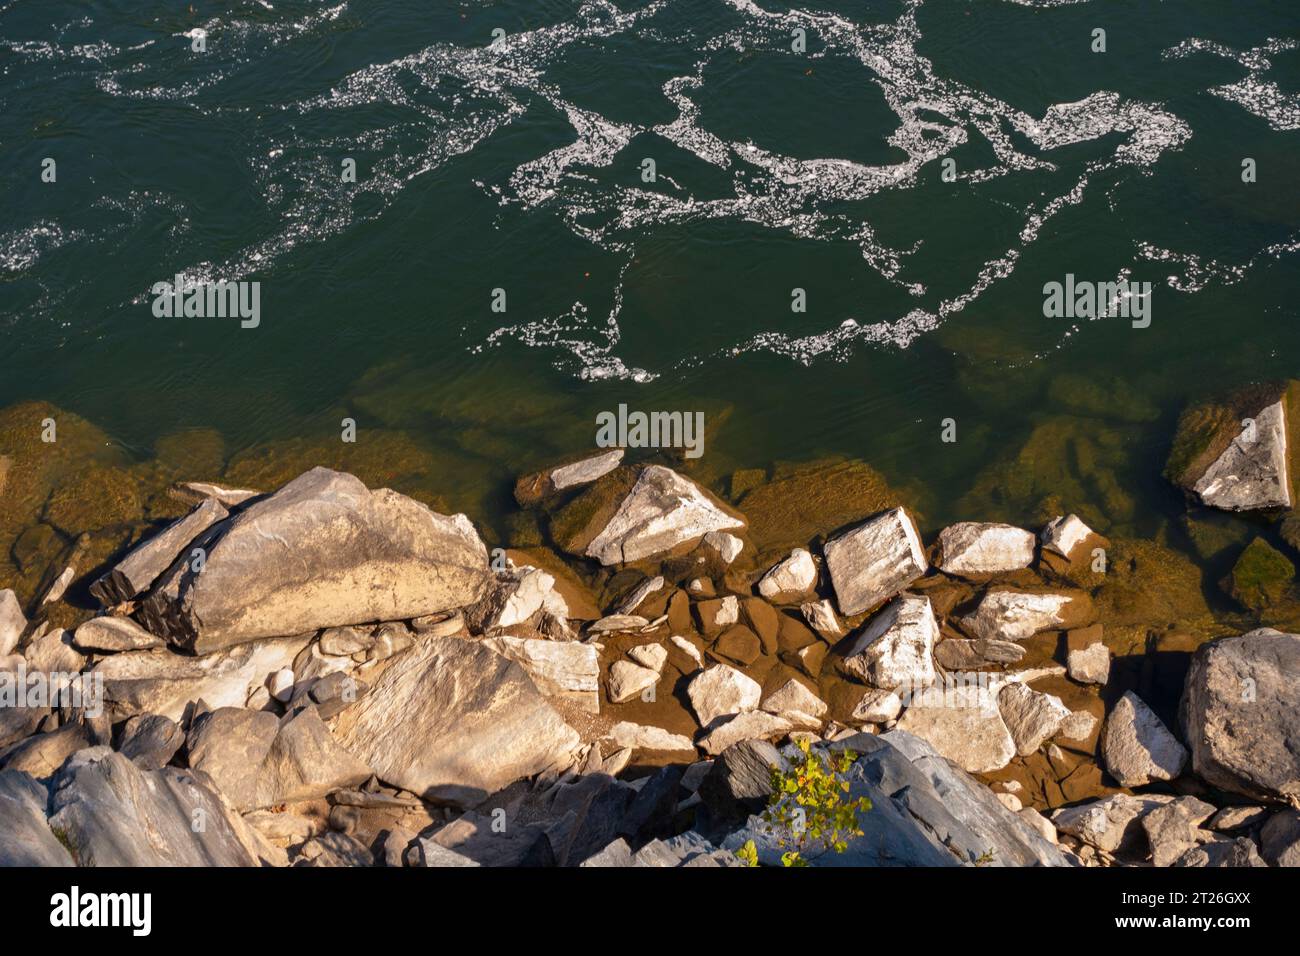 GREAT FALLS PARK, VIRGINIA, USA – Mather Gorge, Potomac River bei Great Falls. Stockfoto